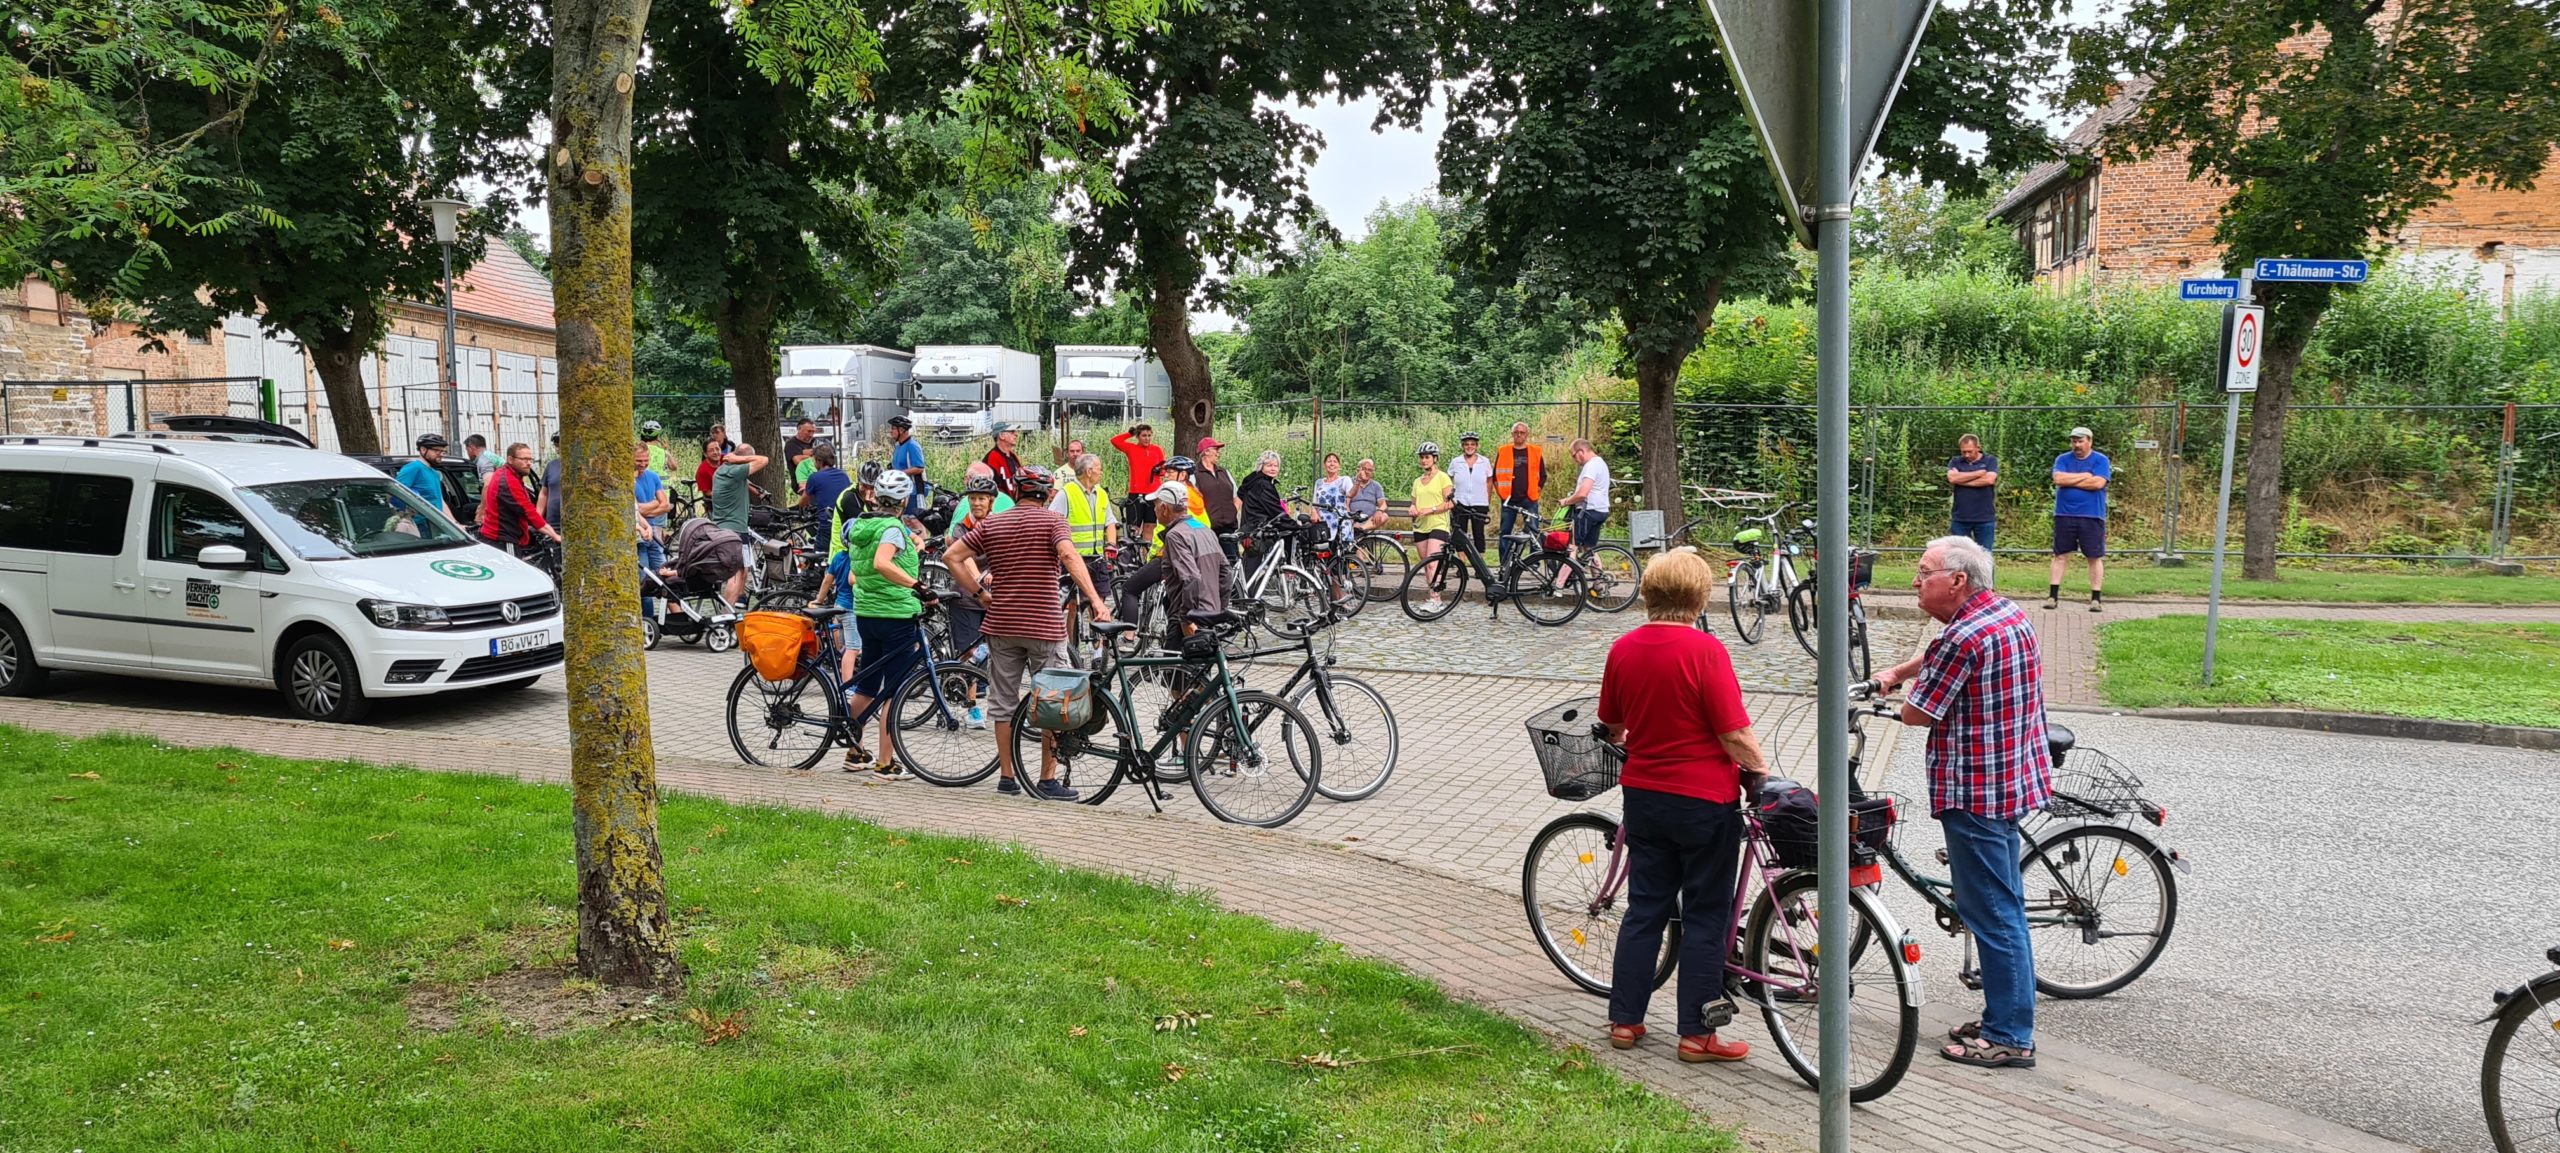 Gruppe von Menschen mit Fahrrädern